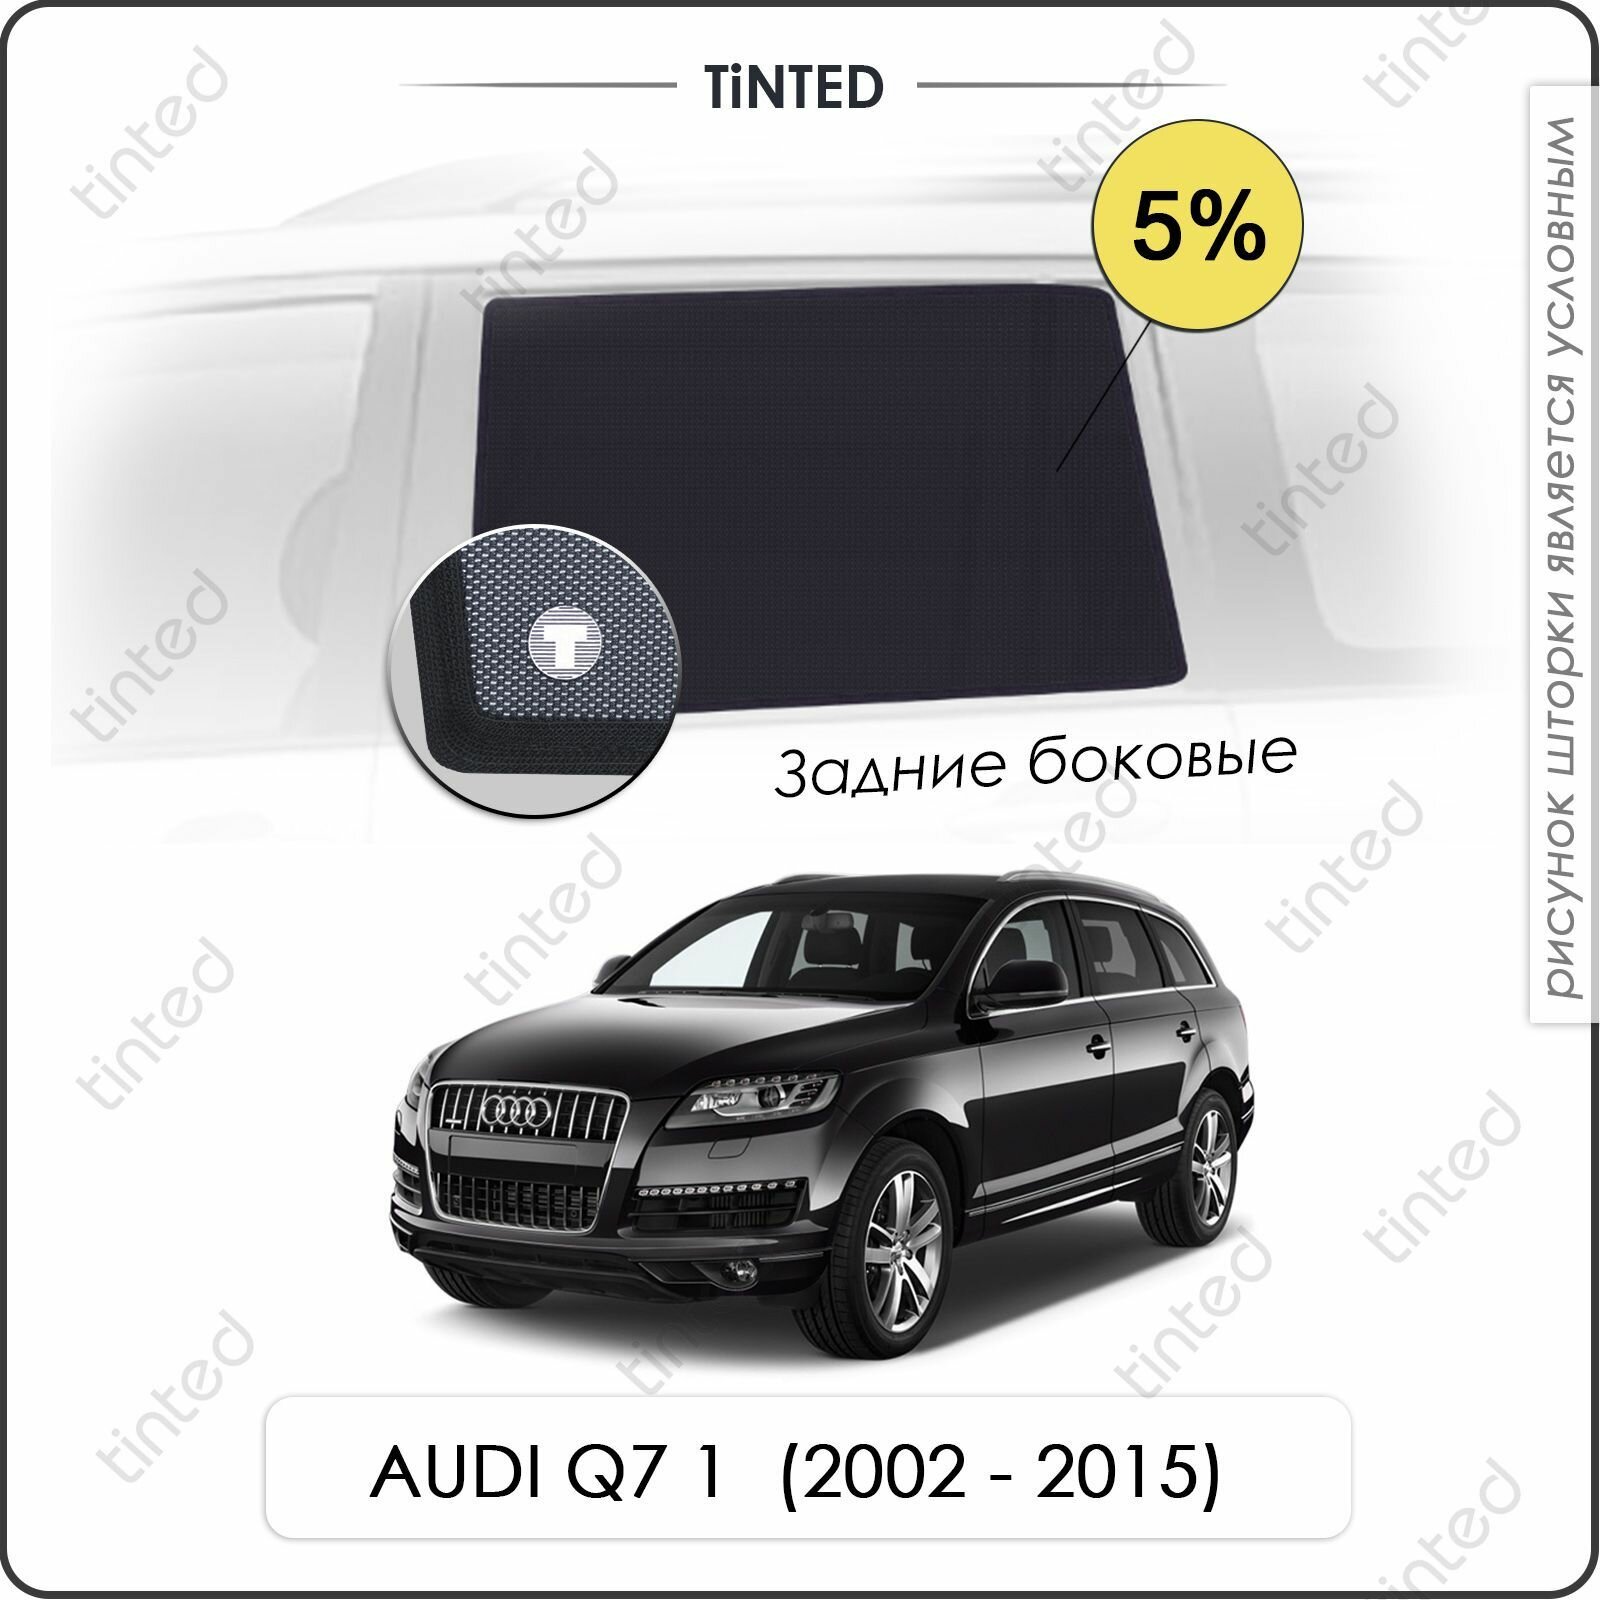 Шторки на автомобиль солнцезащитные AUDI Q7 1 Внедорожник 5дв. (2002 - 2015) на передние двери 5% сетки от солнца в машину Ауди КУ7 Каркасные автошторки Premium